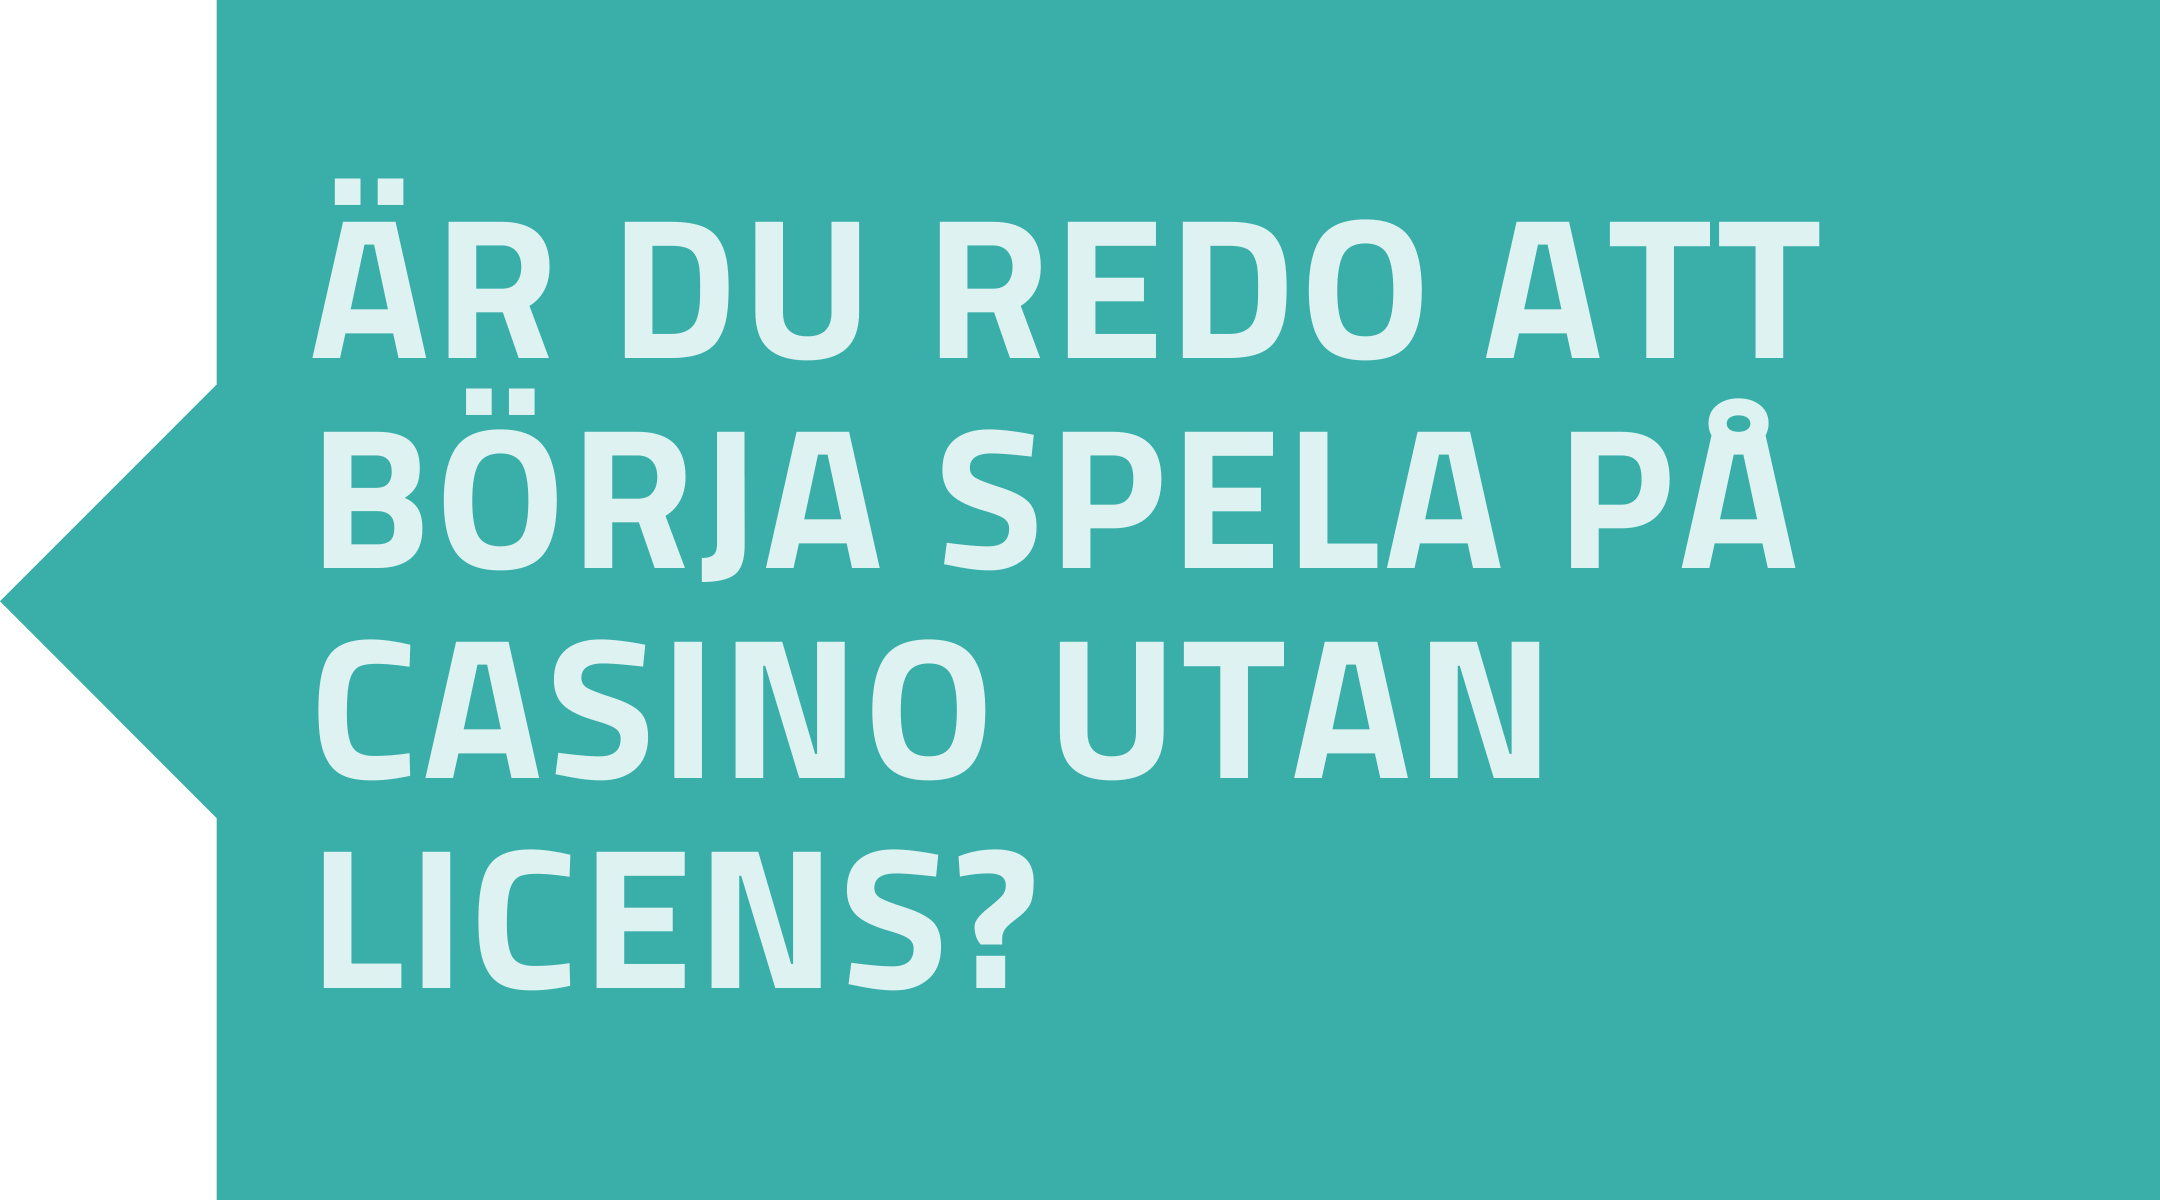 Är du redo att börja spela på casino utan licens?